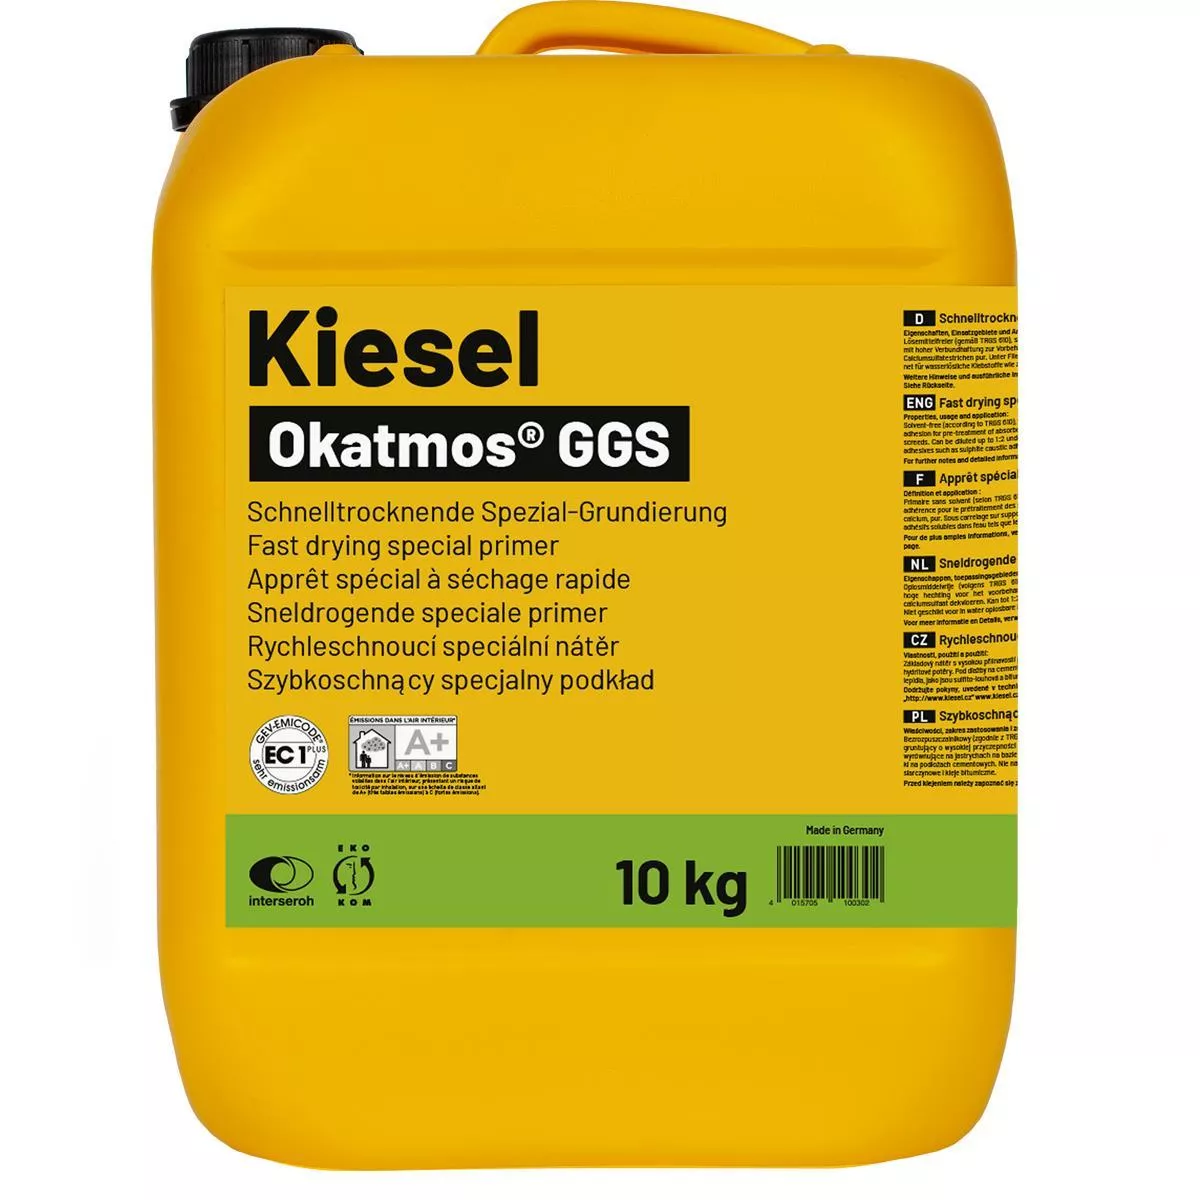 Speciale primer Okatmos GGS 10 kg